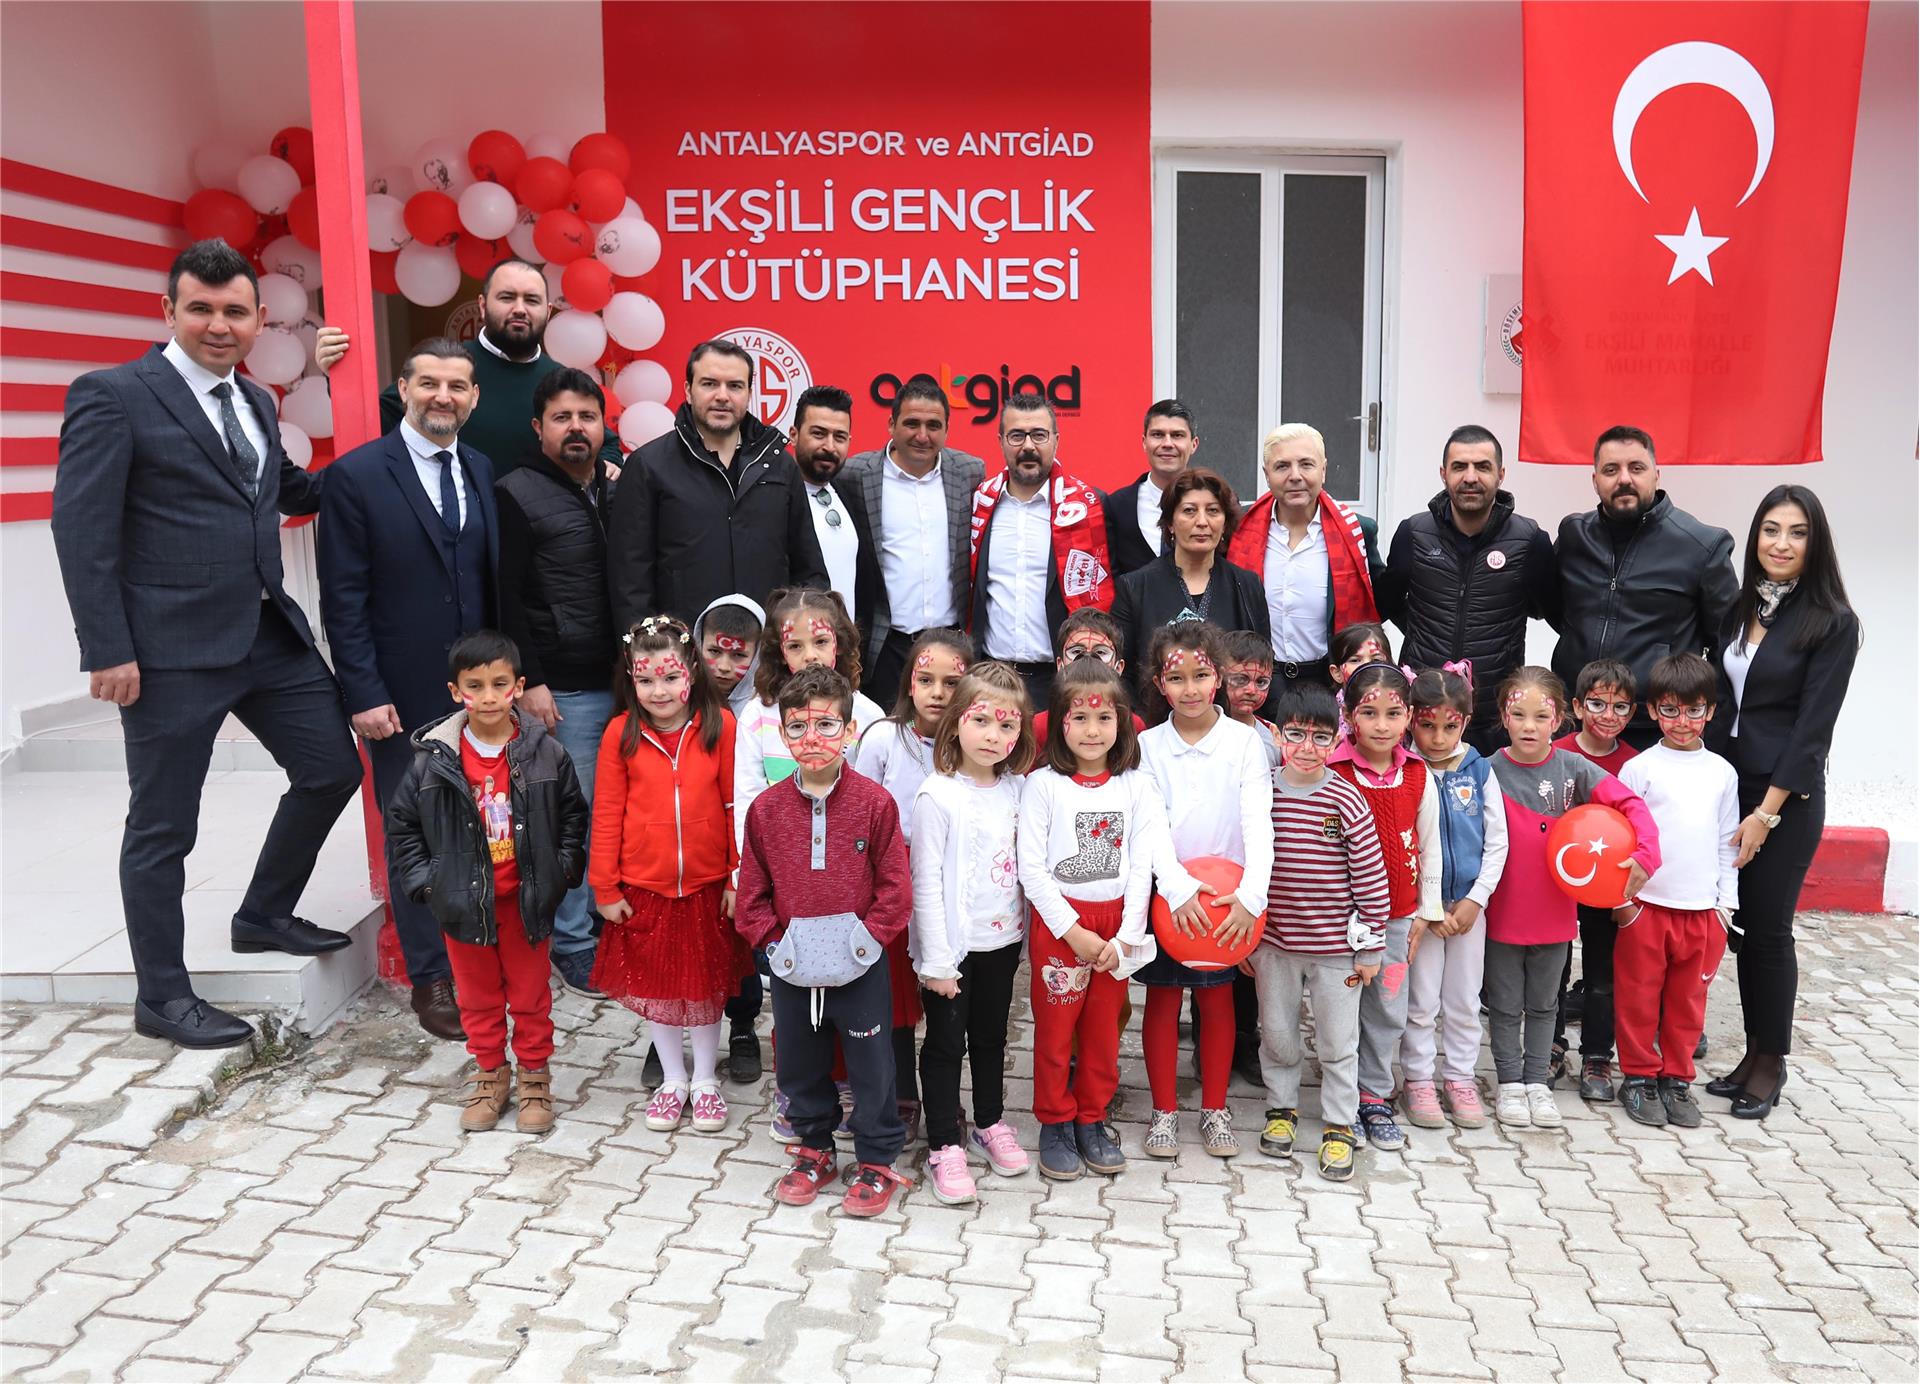 Antalyaspor Ekşili Gençlik Kütüphanesi Açıldı